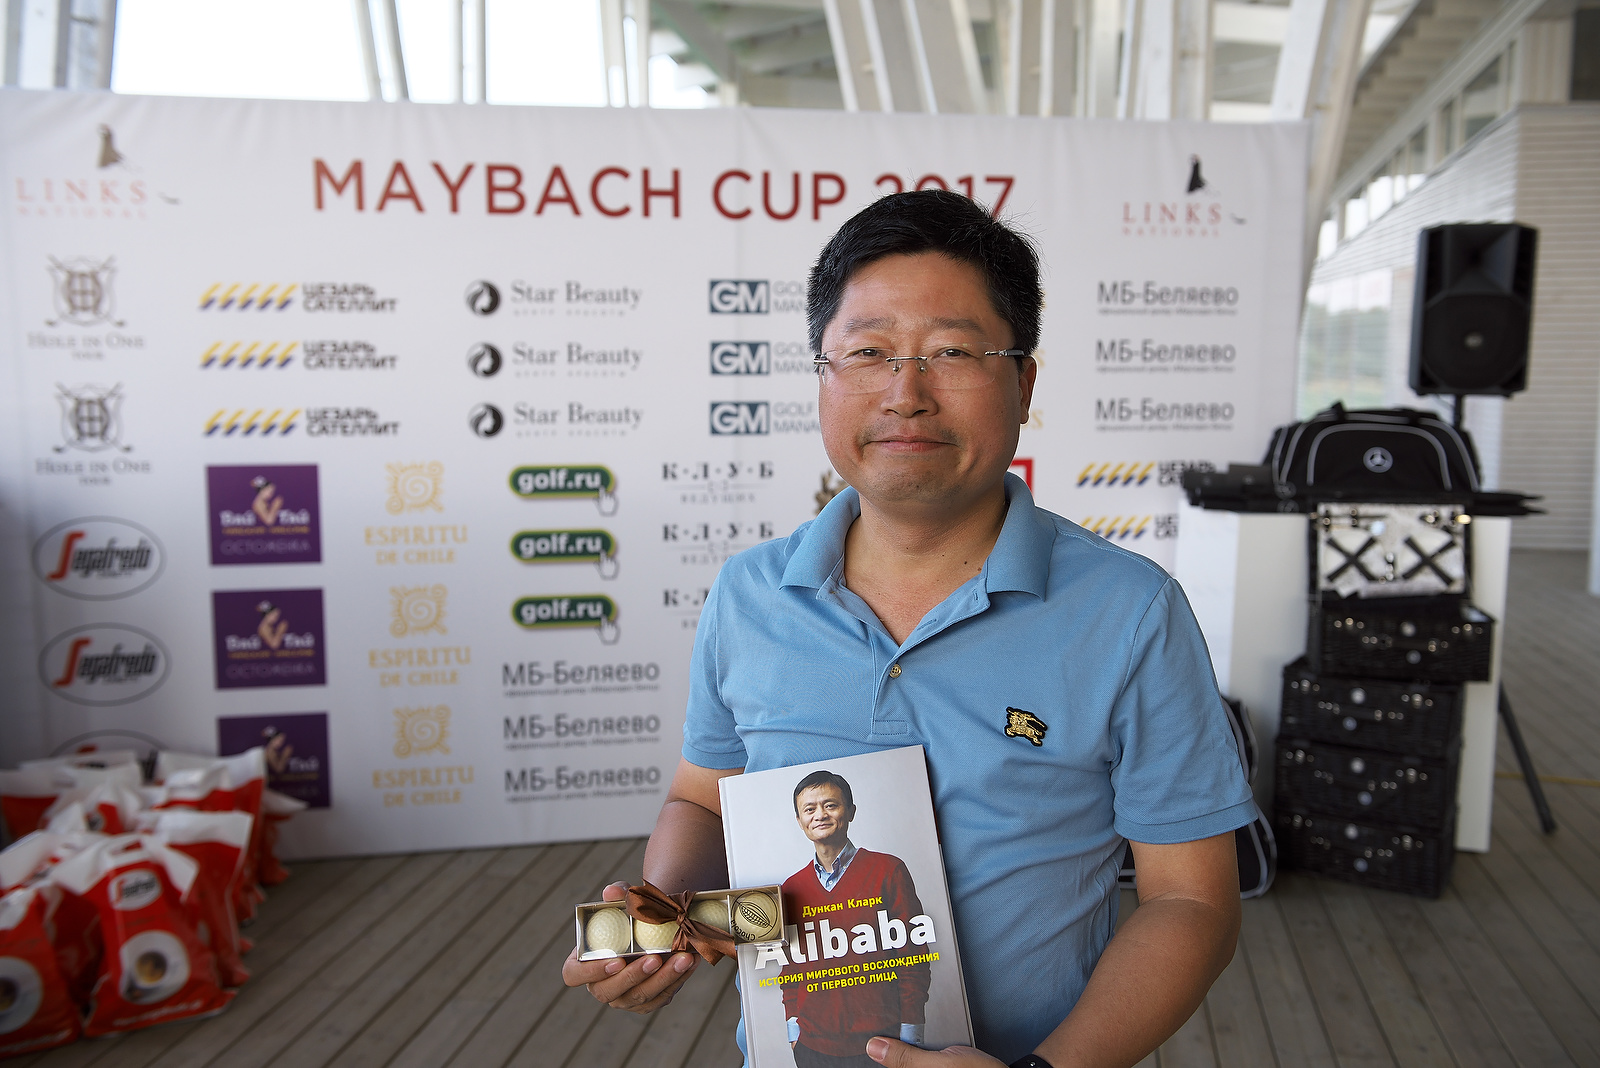 Maybach cup